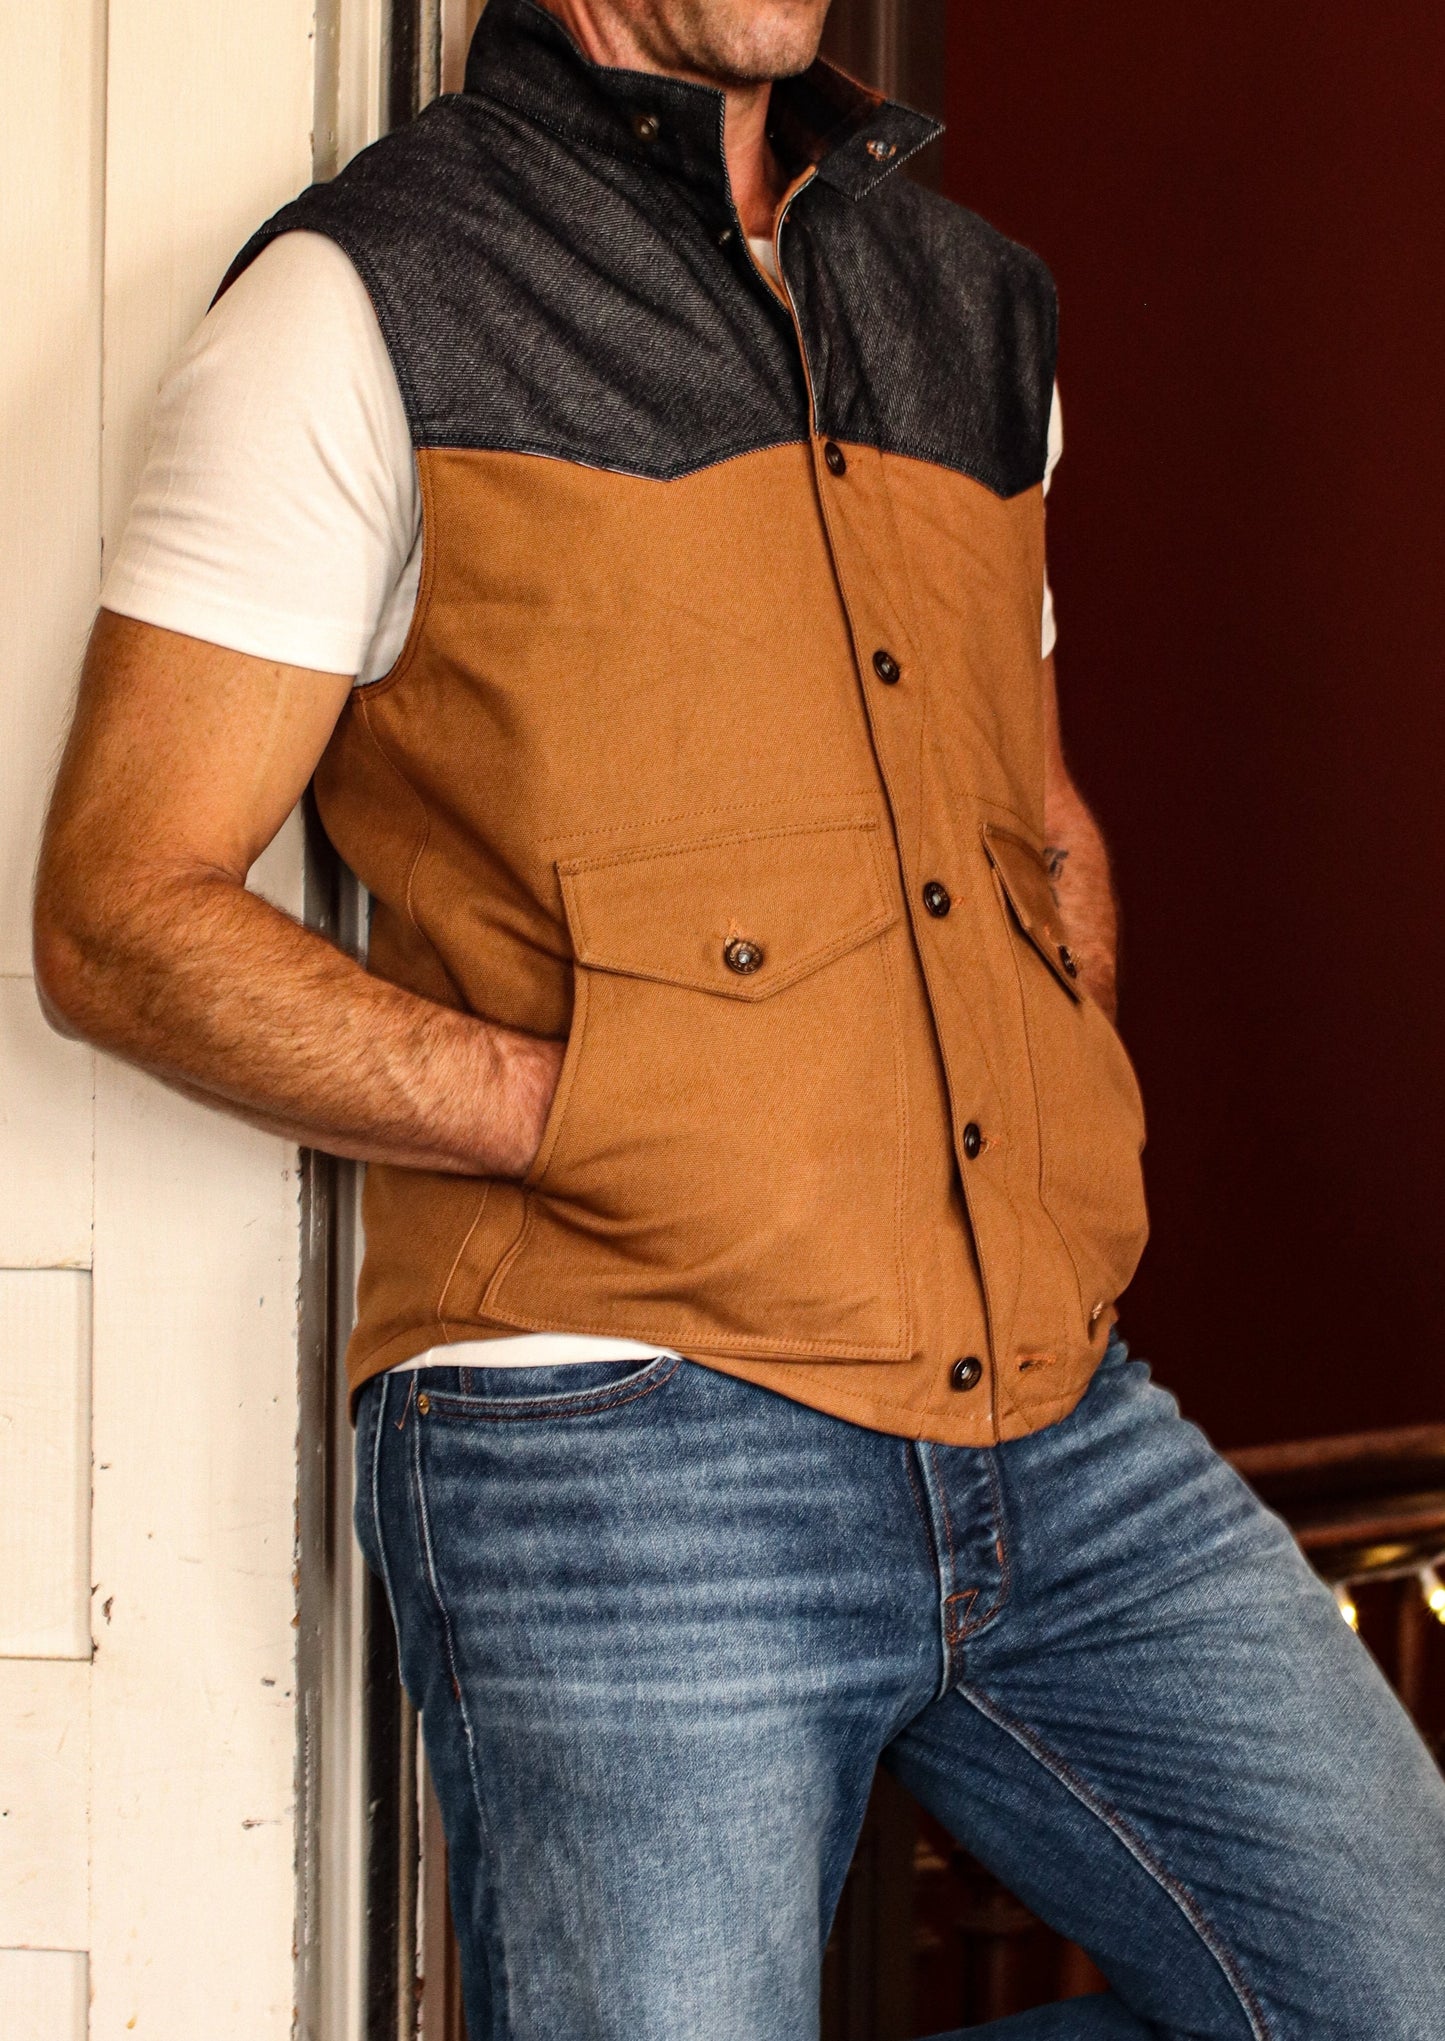 James Vest 100% Wool-lined